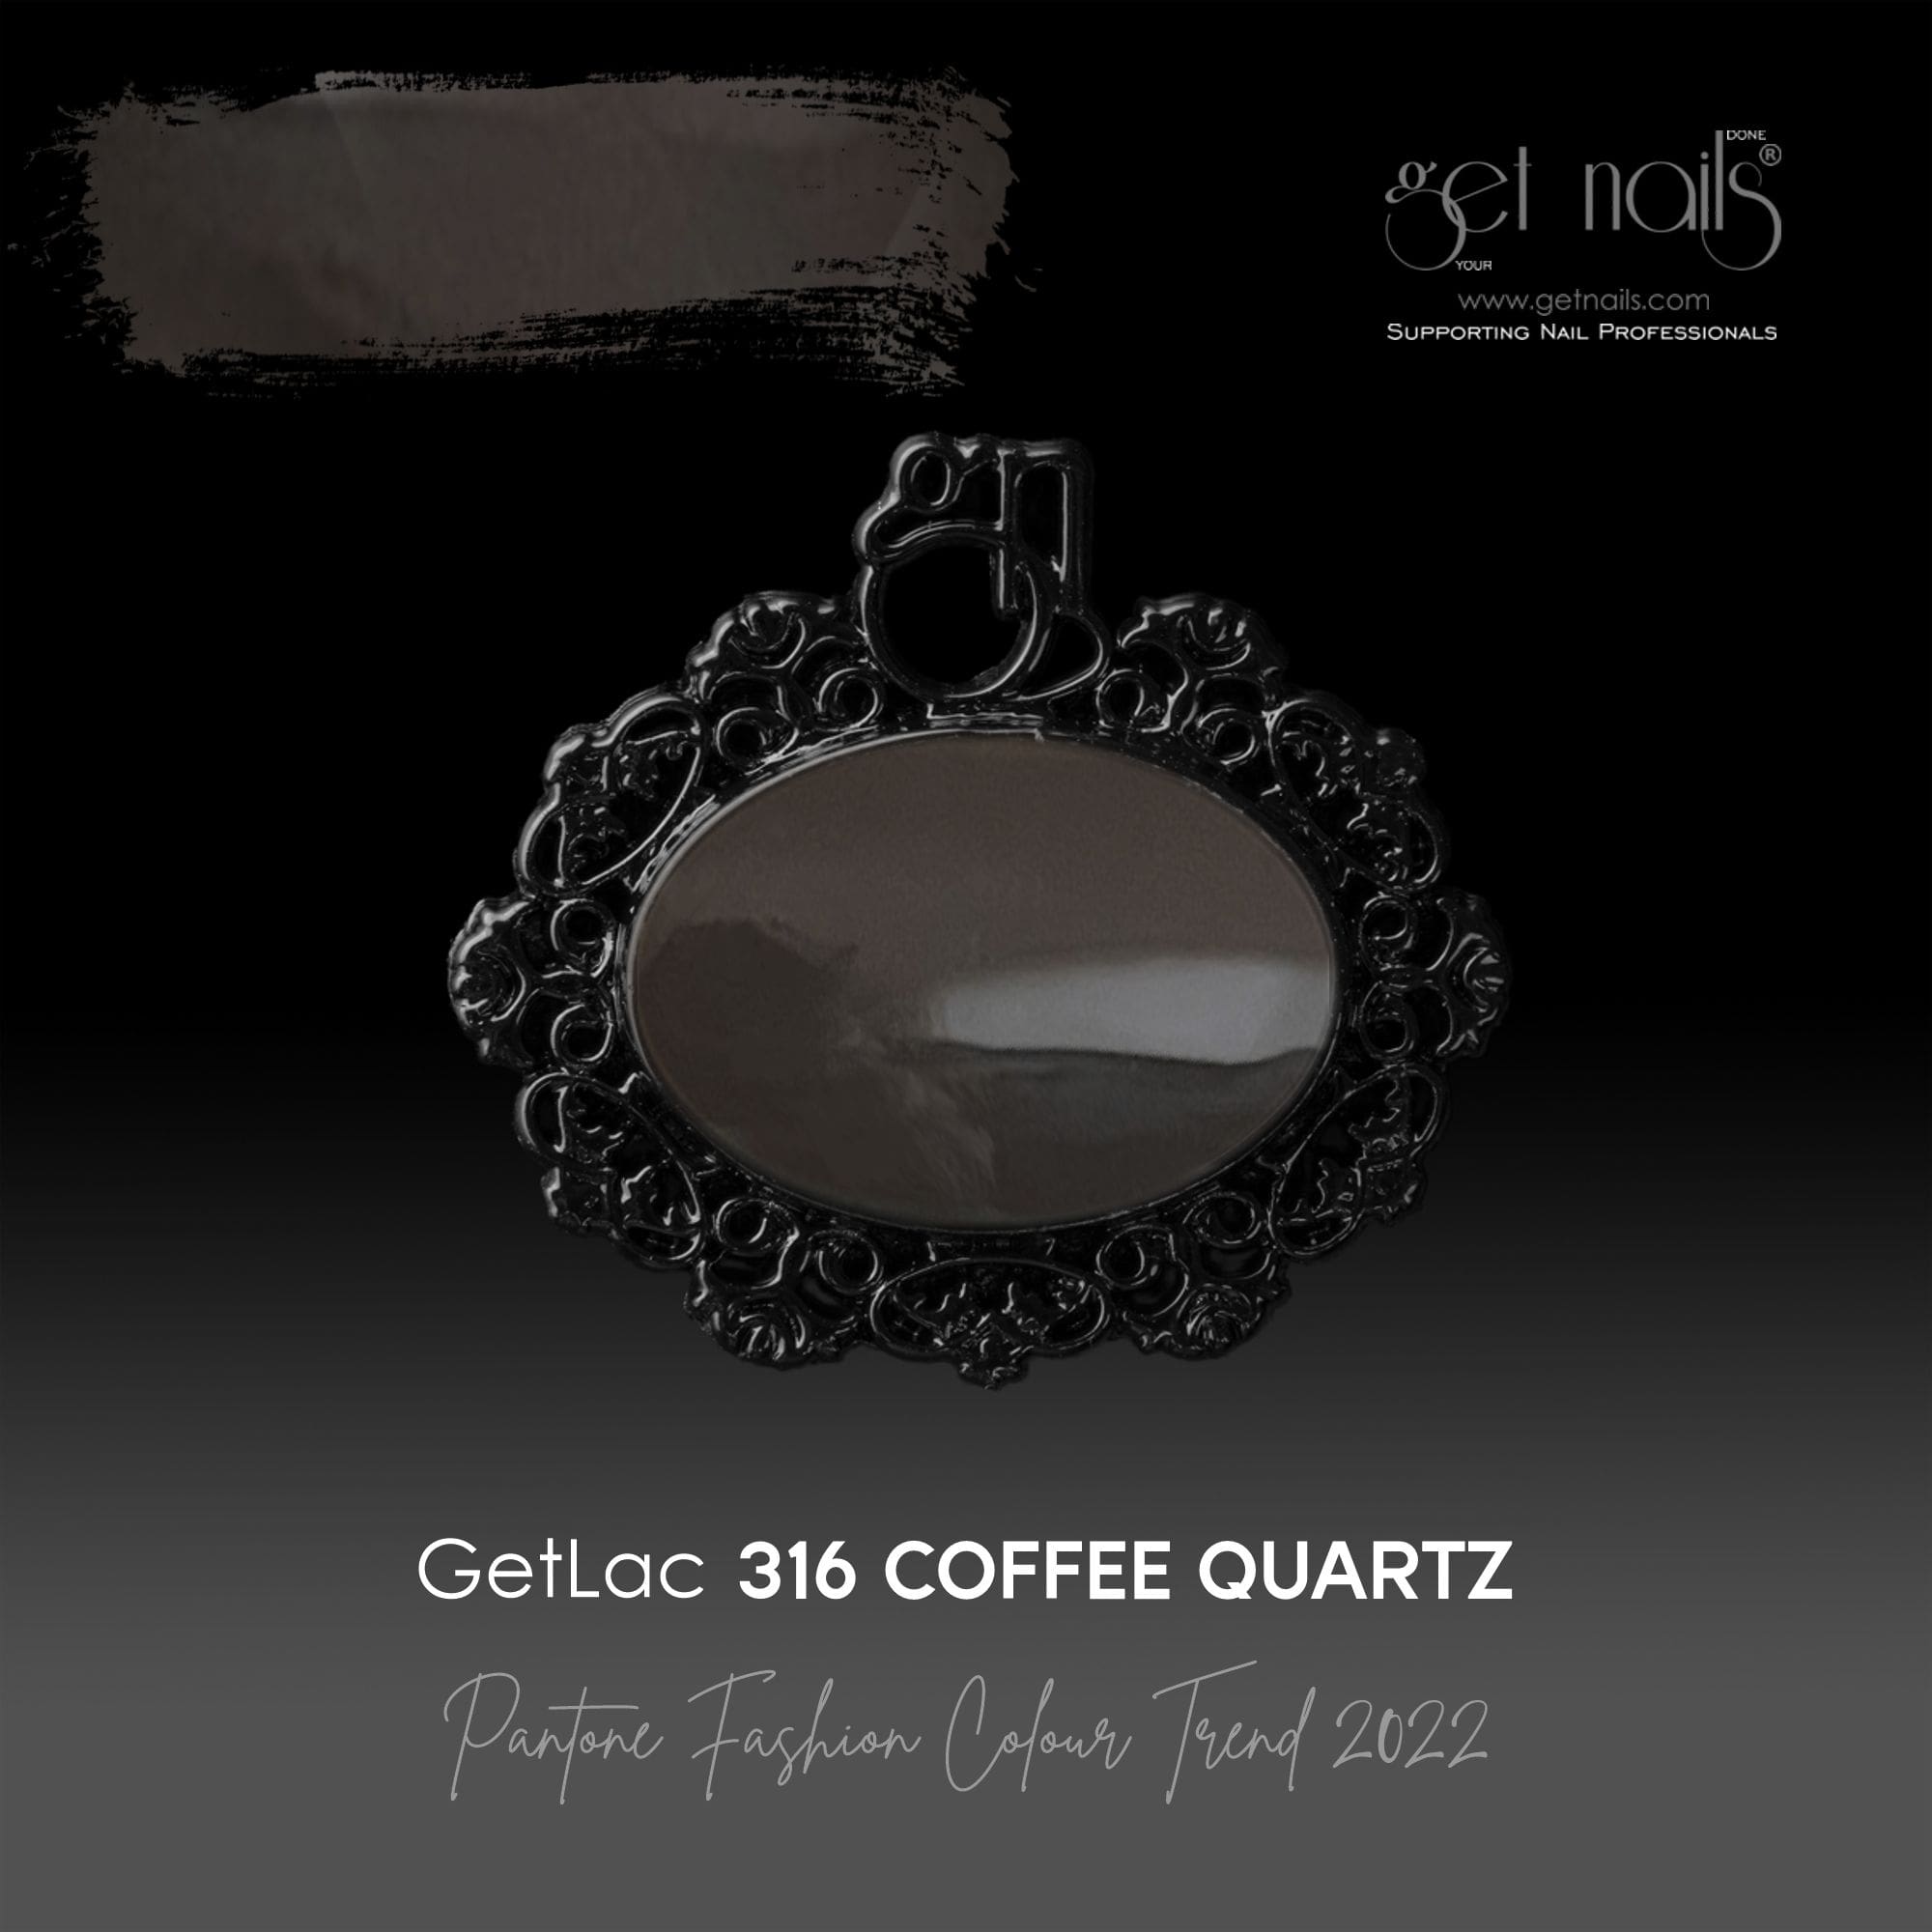 Get Nails Austria - GetLac 316 Coffee Quartz 15g